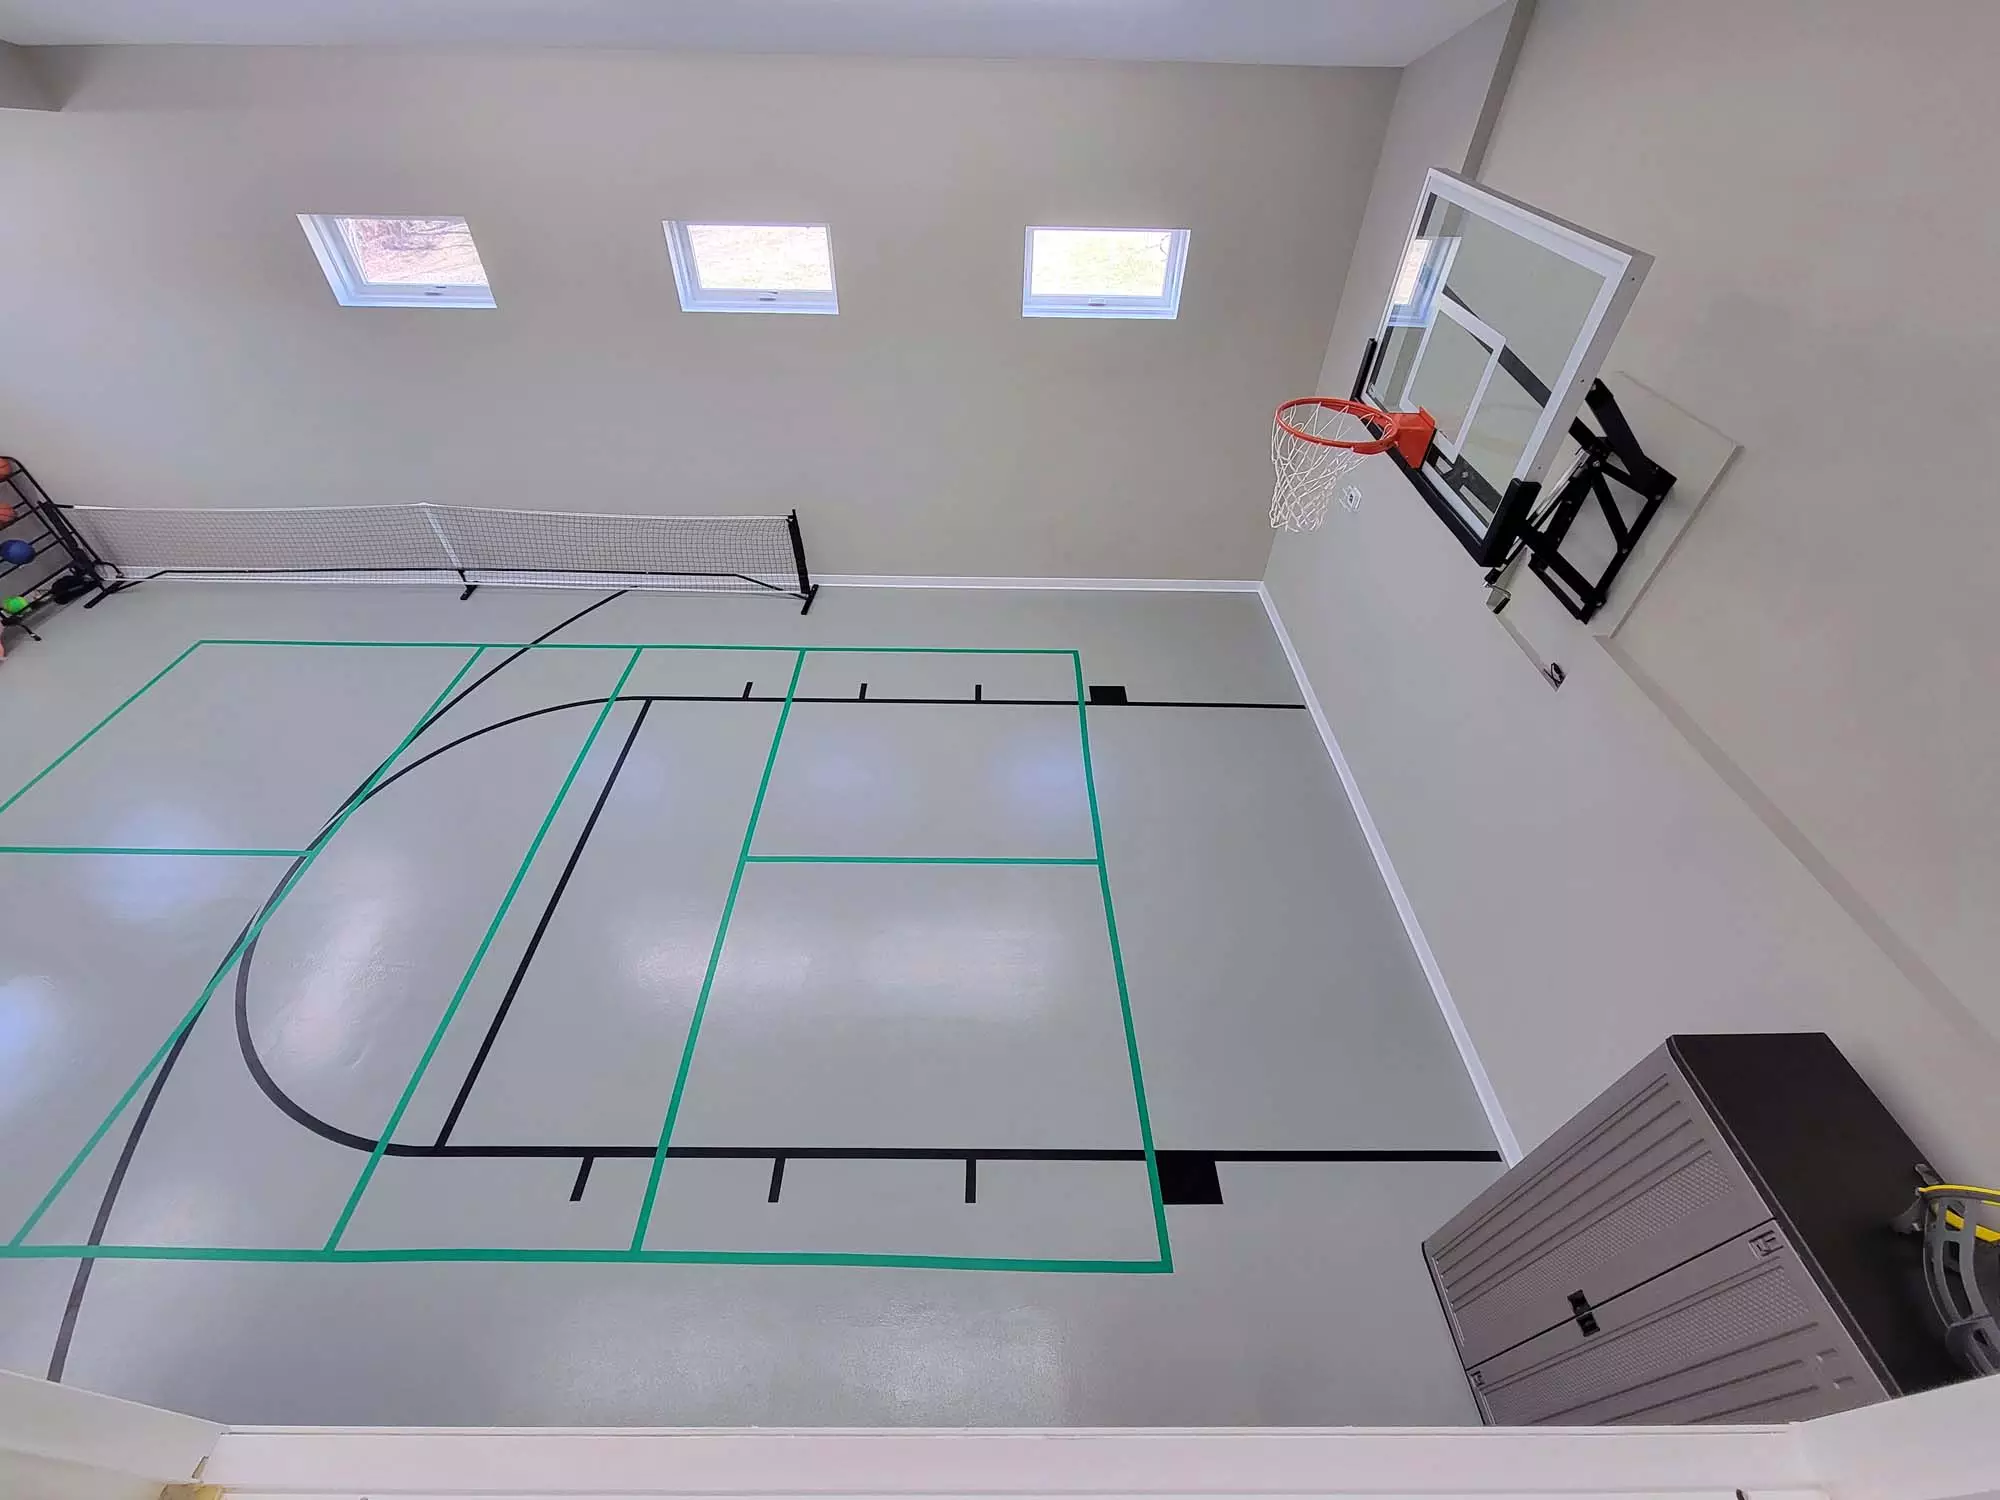 Floor is striped for multiple games - Basketball, Pickleball, Dodgeball